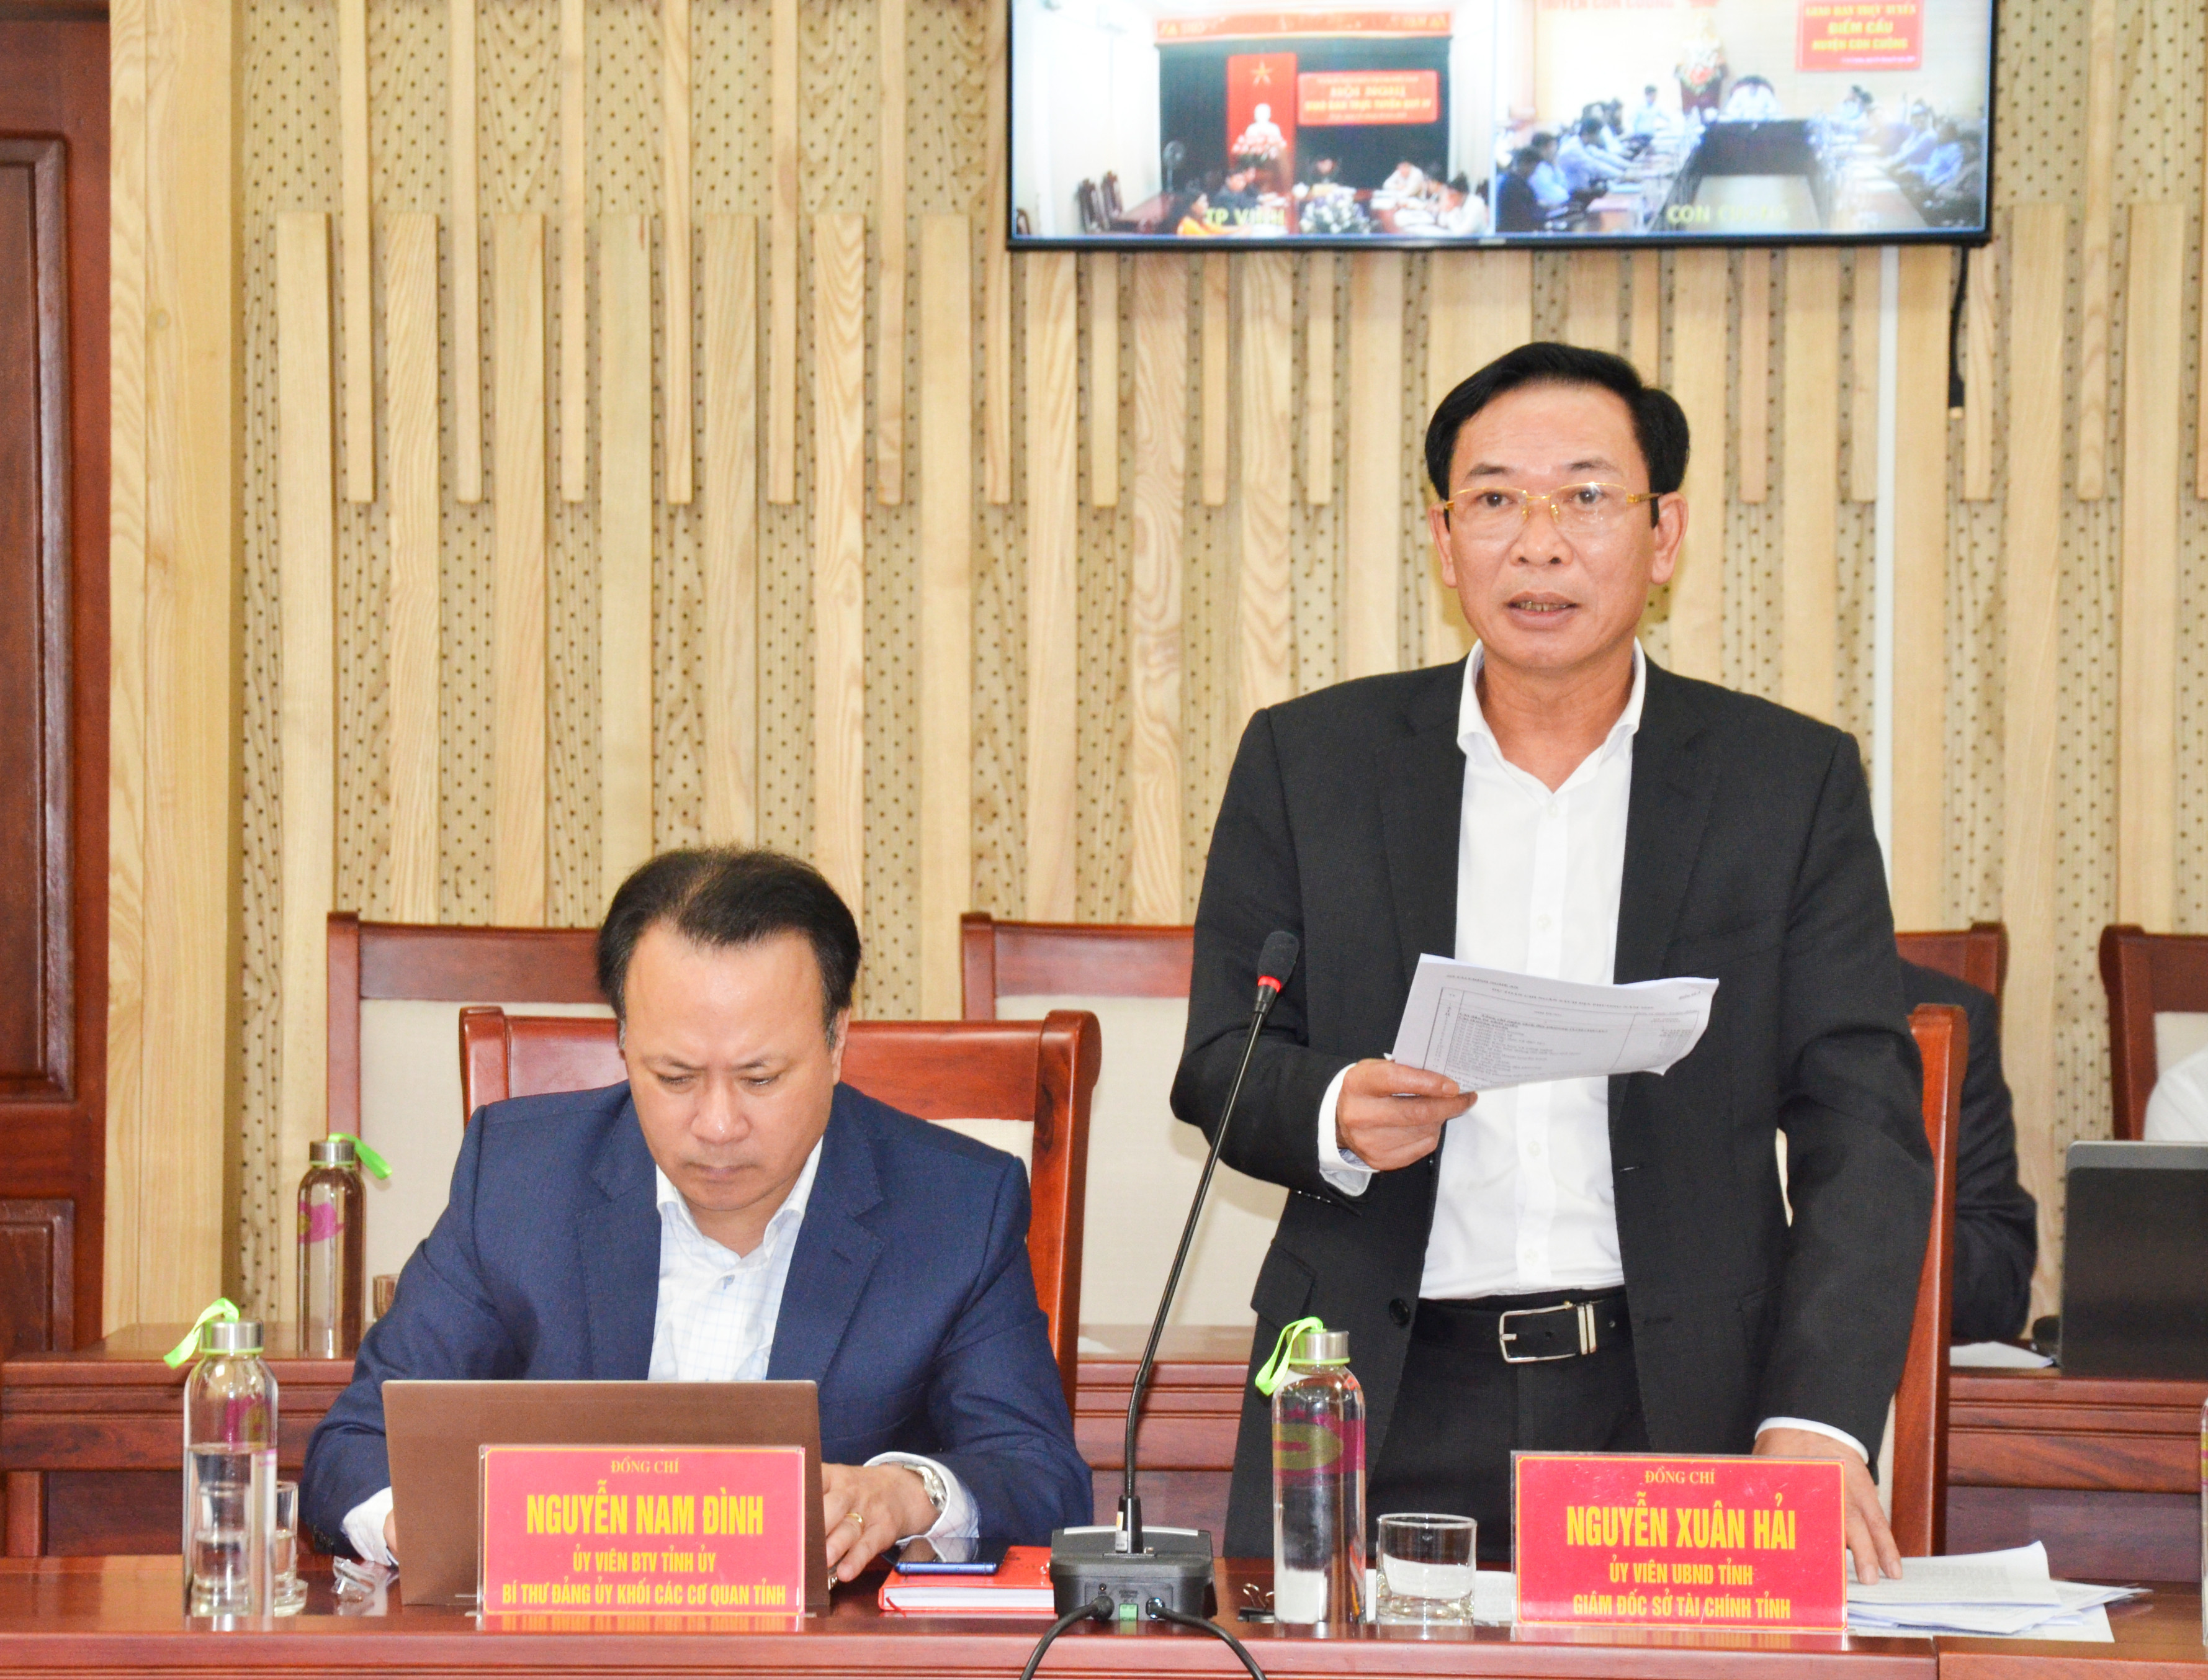 Giám đốc Sở Tài chính Nguyễn Xuân Hải báo cáo kết quả